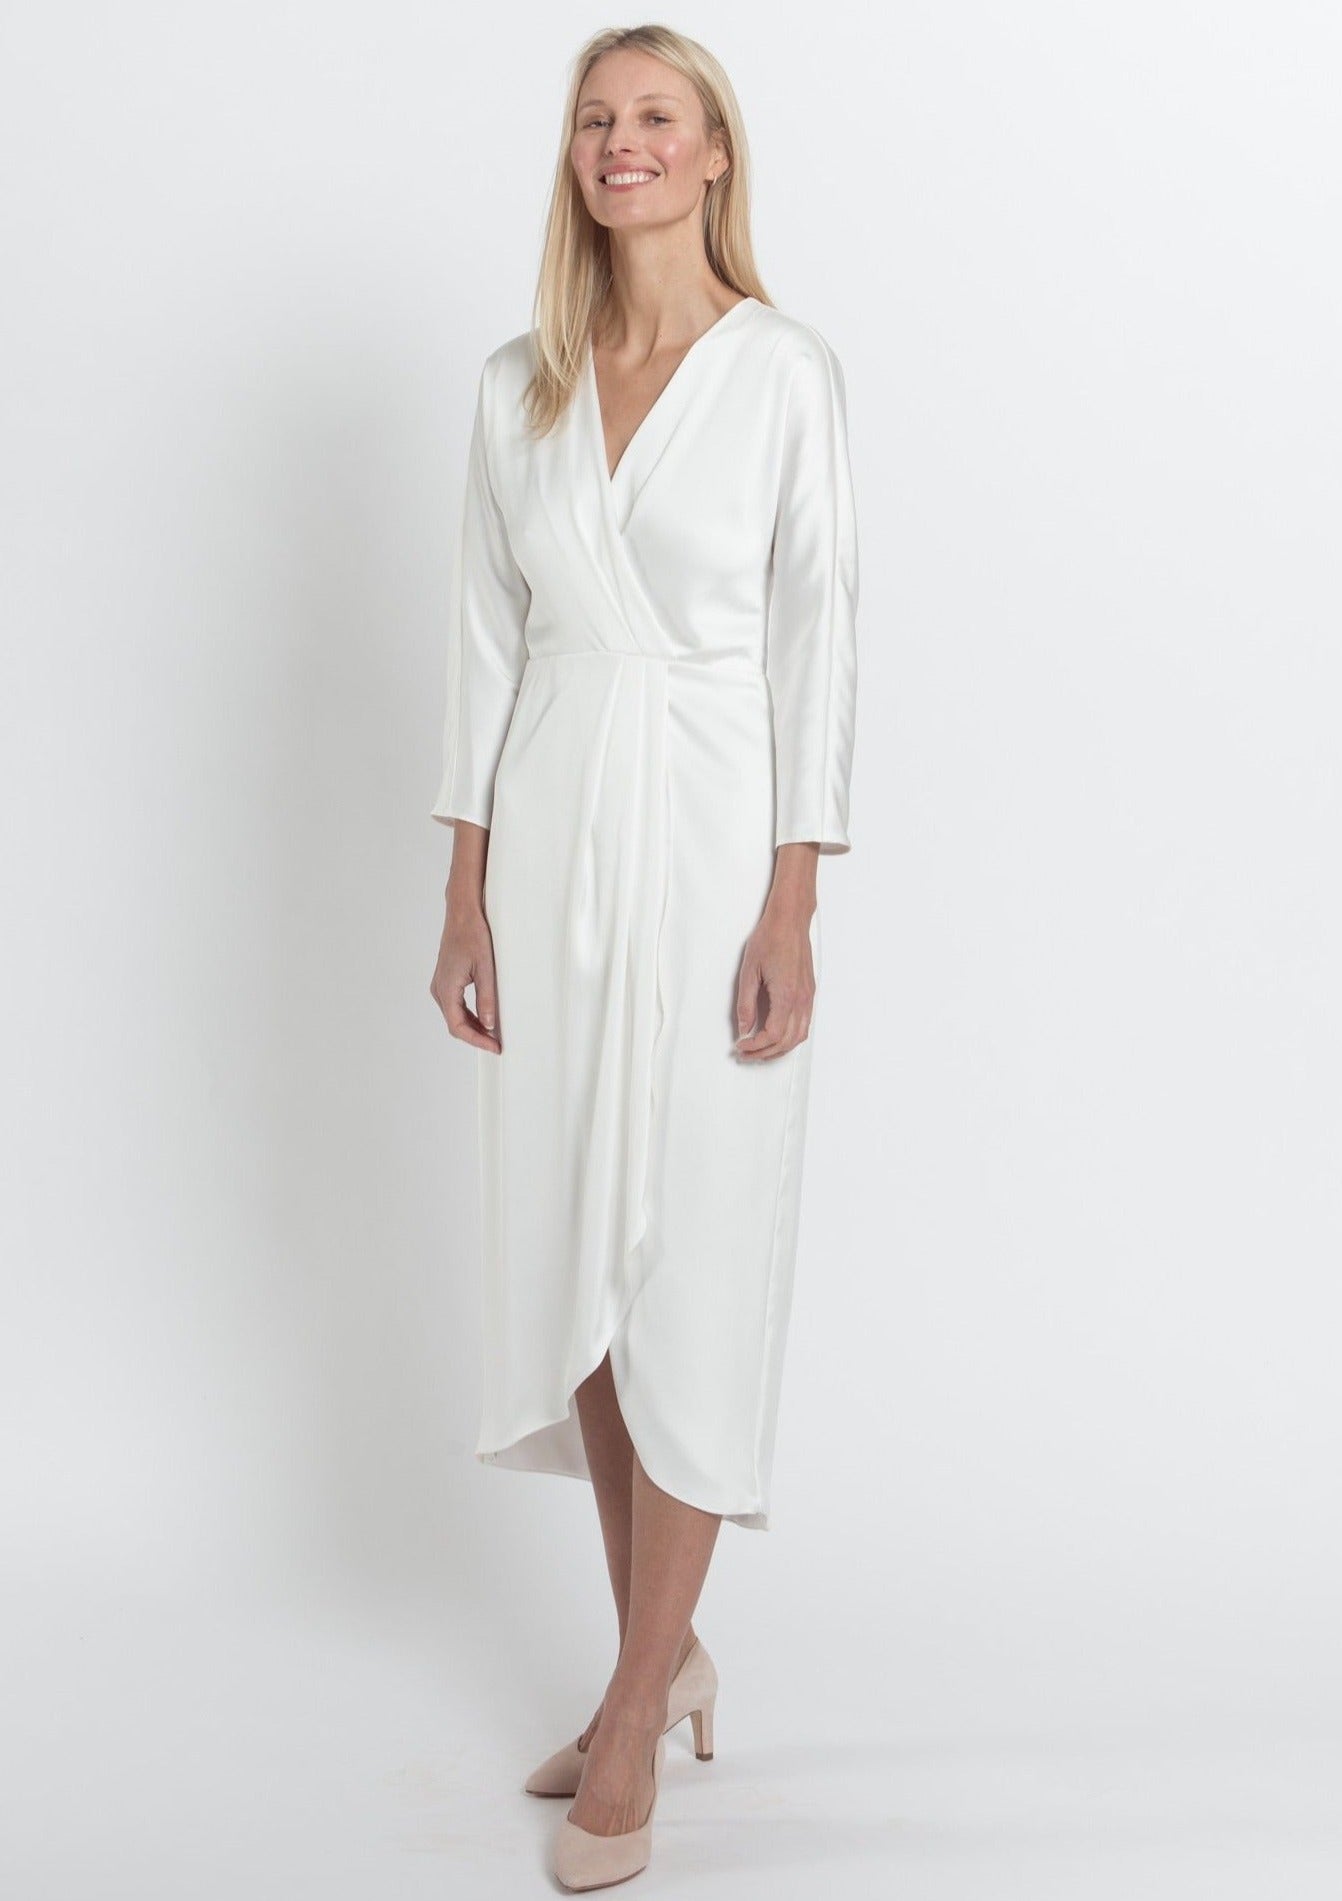 SCARLETT SATIN DRESS, WHITE